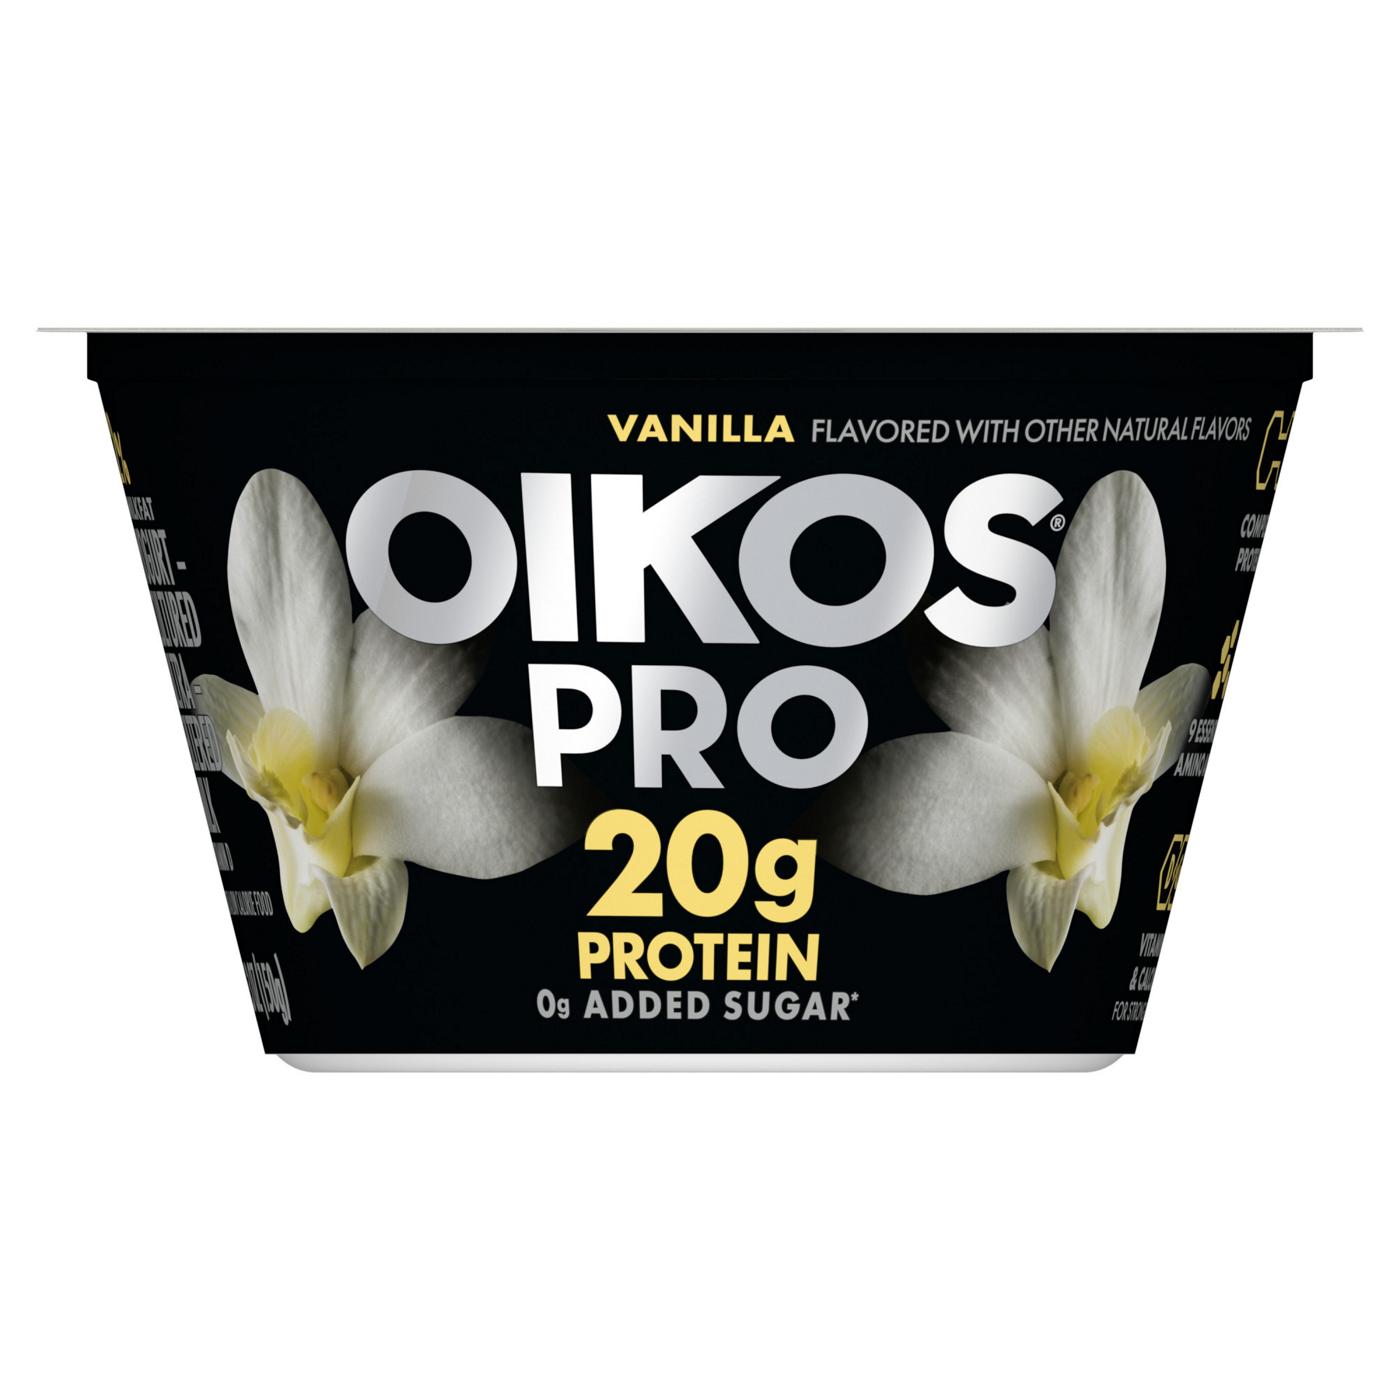 Dannon Oikos Pro Vanilla Yogurt; image 1 of 7